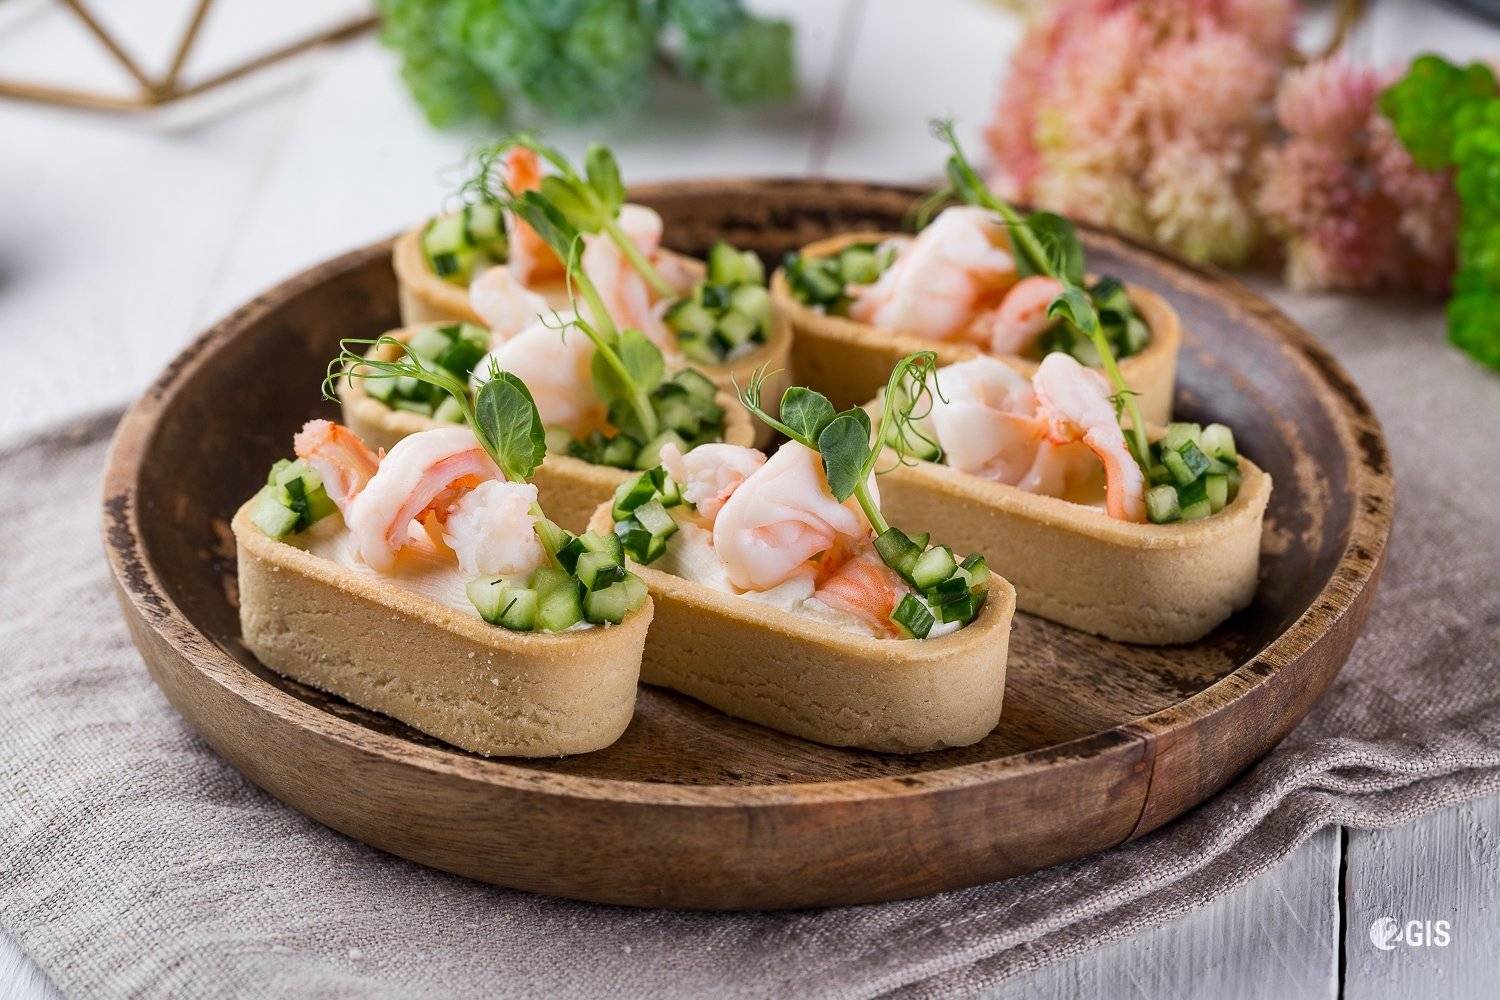 Тарталетки с тунцом - как вкусно готовить салат из рыбных консервов и тесто пошагово с фото